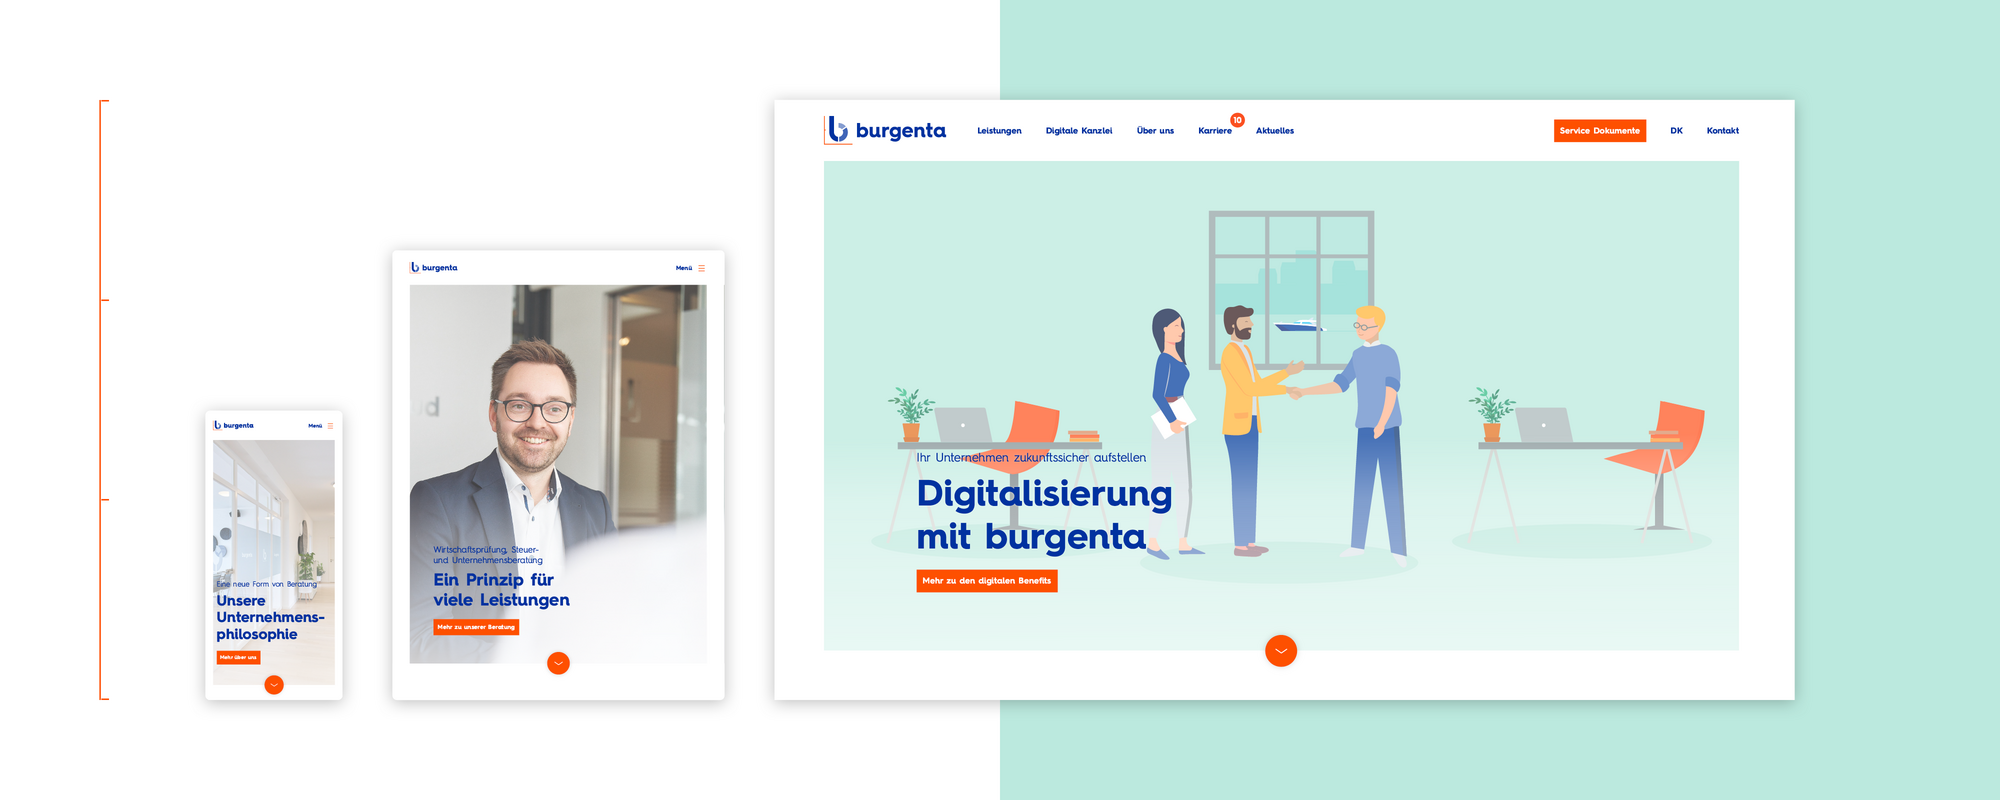 Ein Ausschnitt der von visuellverstehen gestalteten burgenta-Website mit einer Stock Illustration von Menschen in einem Büro und weiteren verkleinerten Abbildungen der Website.